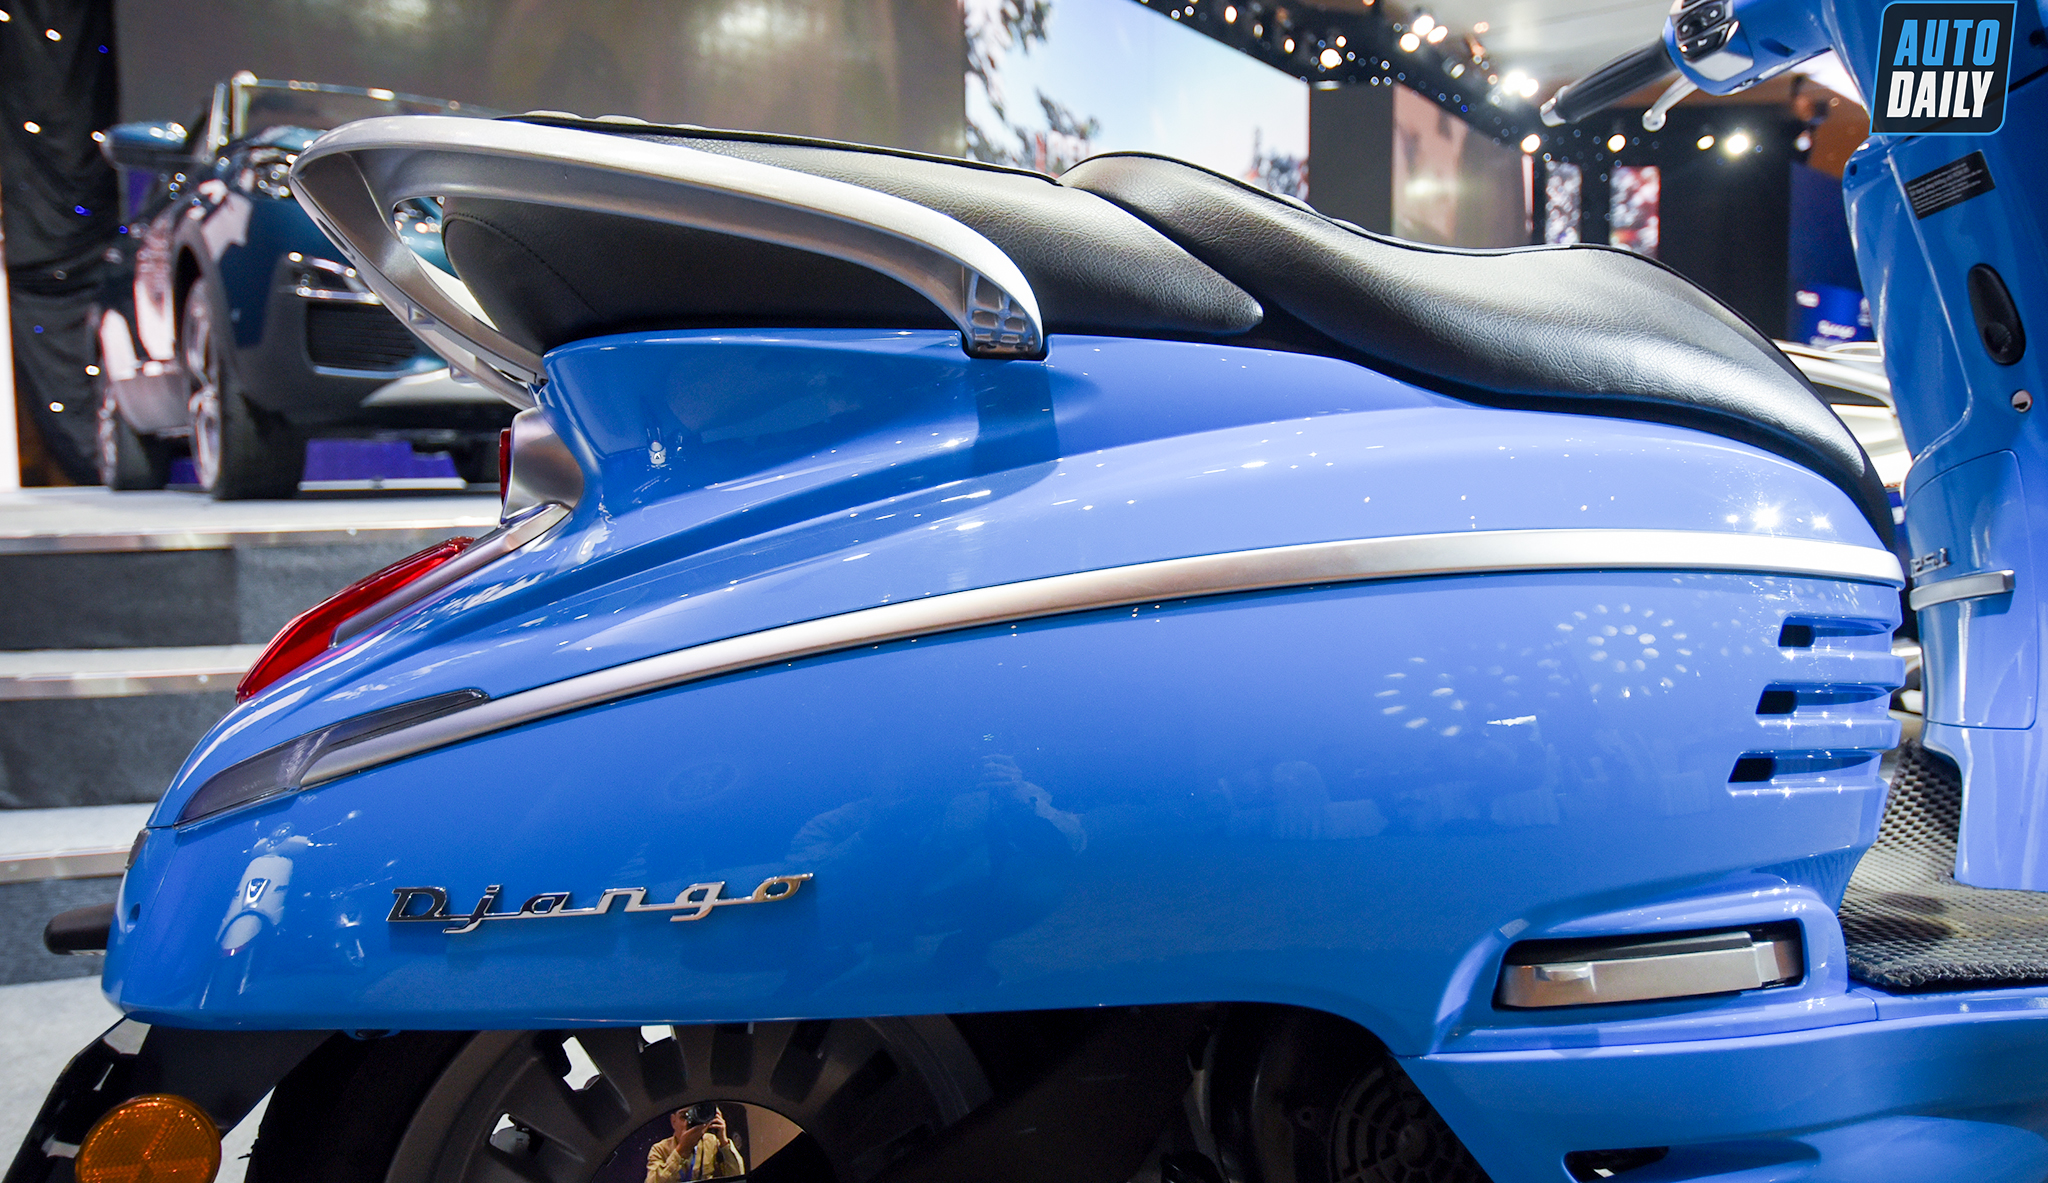 Thaco ra mắt xe máy Peugeot Django 125 giá 68 triệu đồng